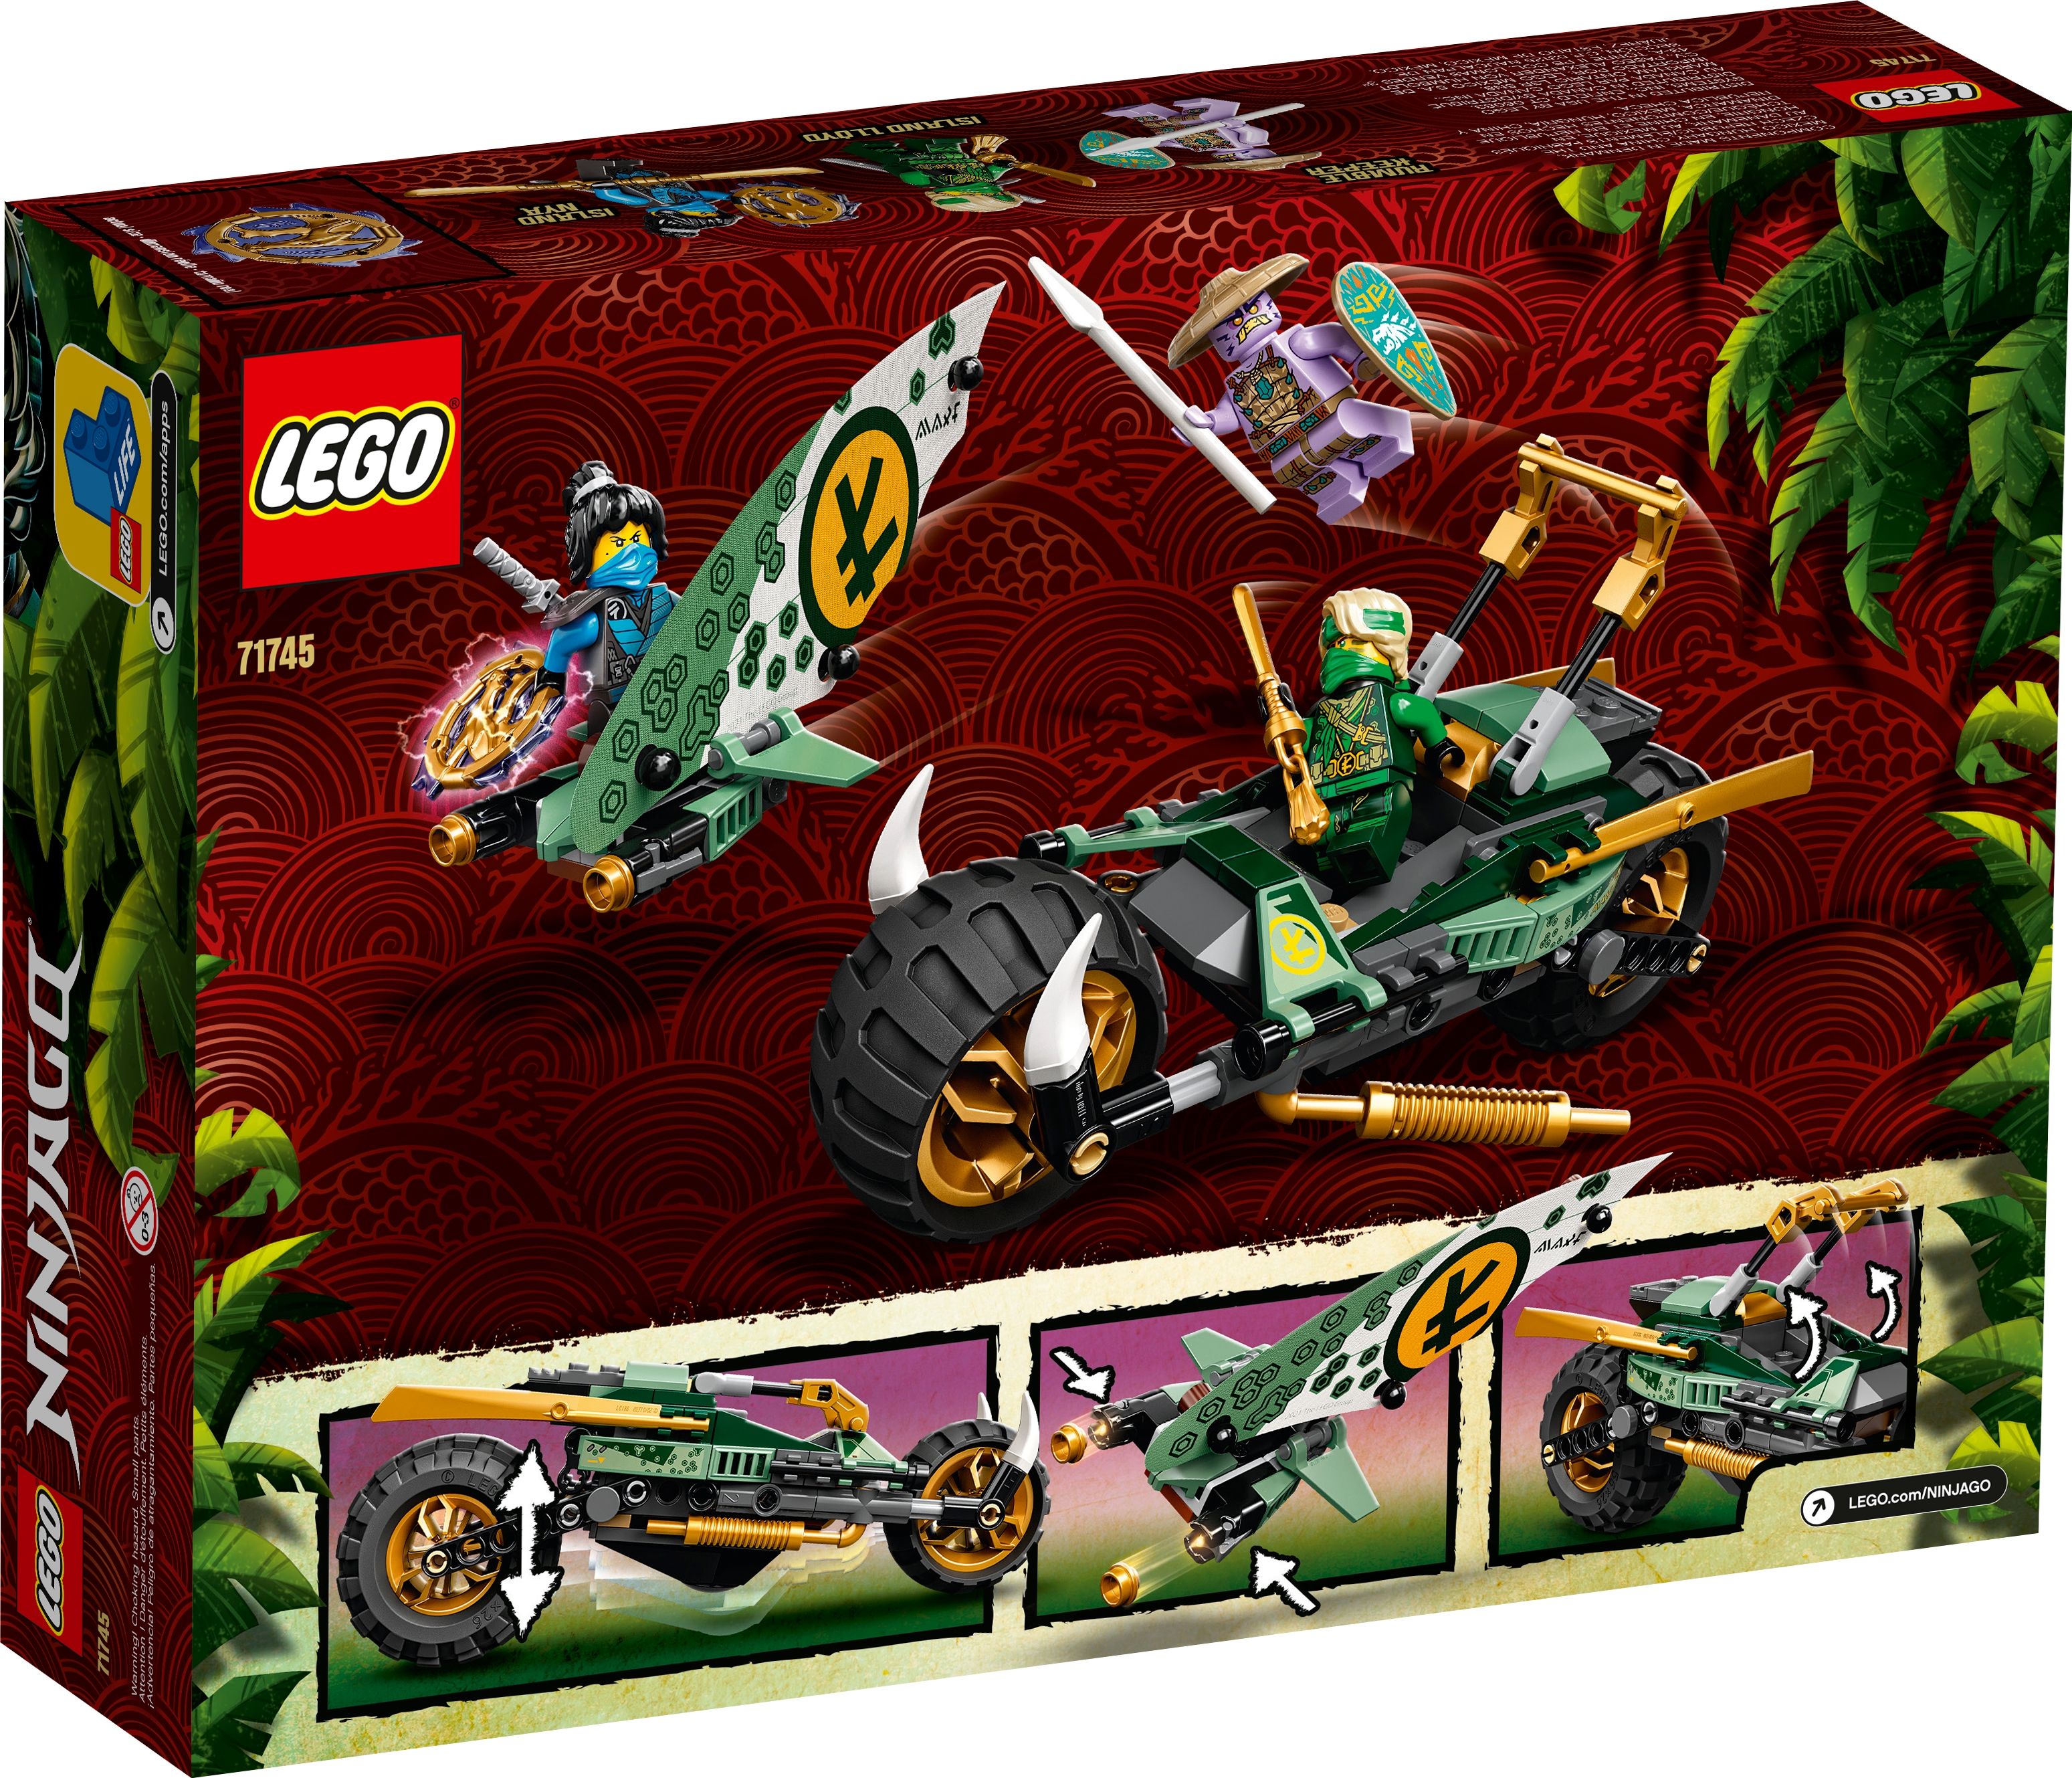 LEGO Ninjago 71745 Lloyds Dschungel-Bike LEGO_71745_alt9.jpg